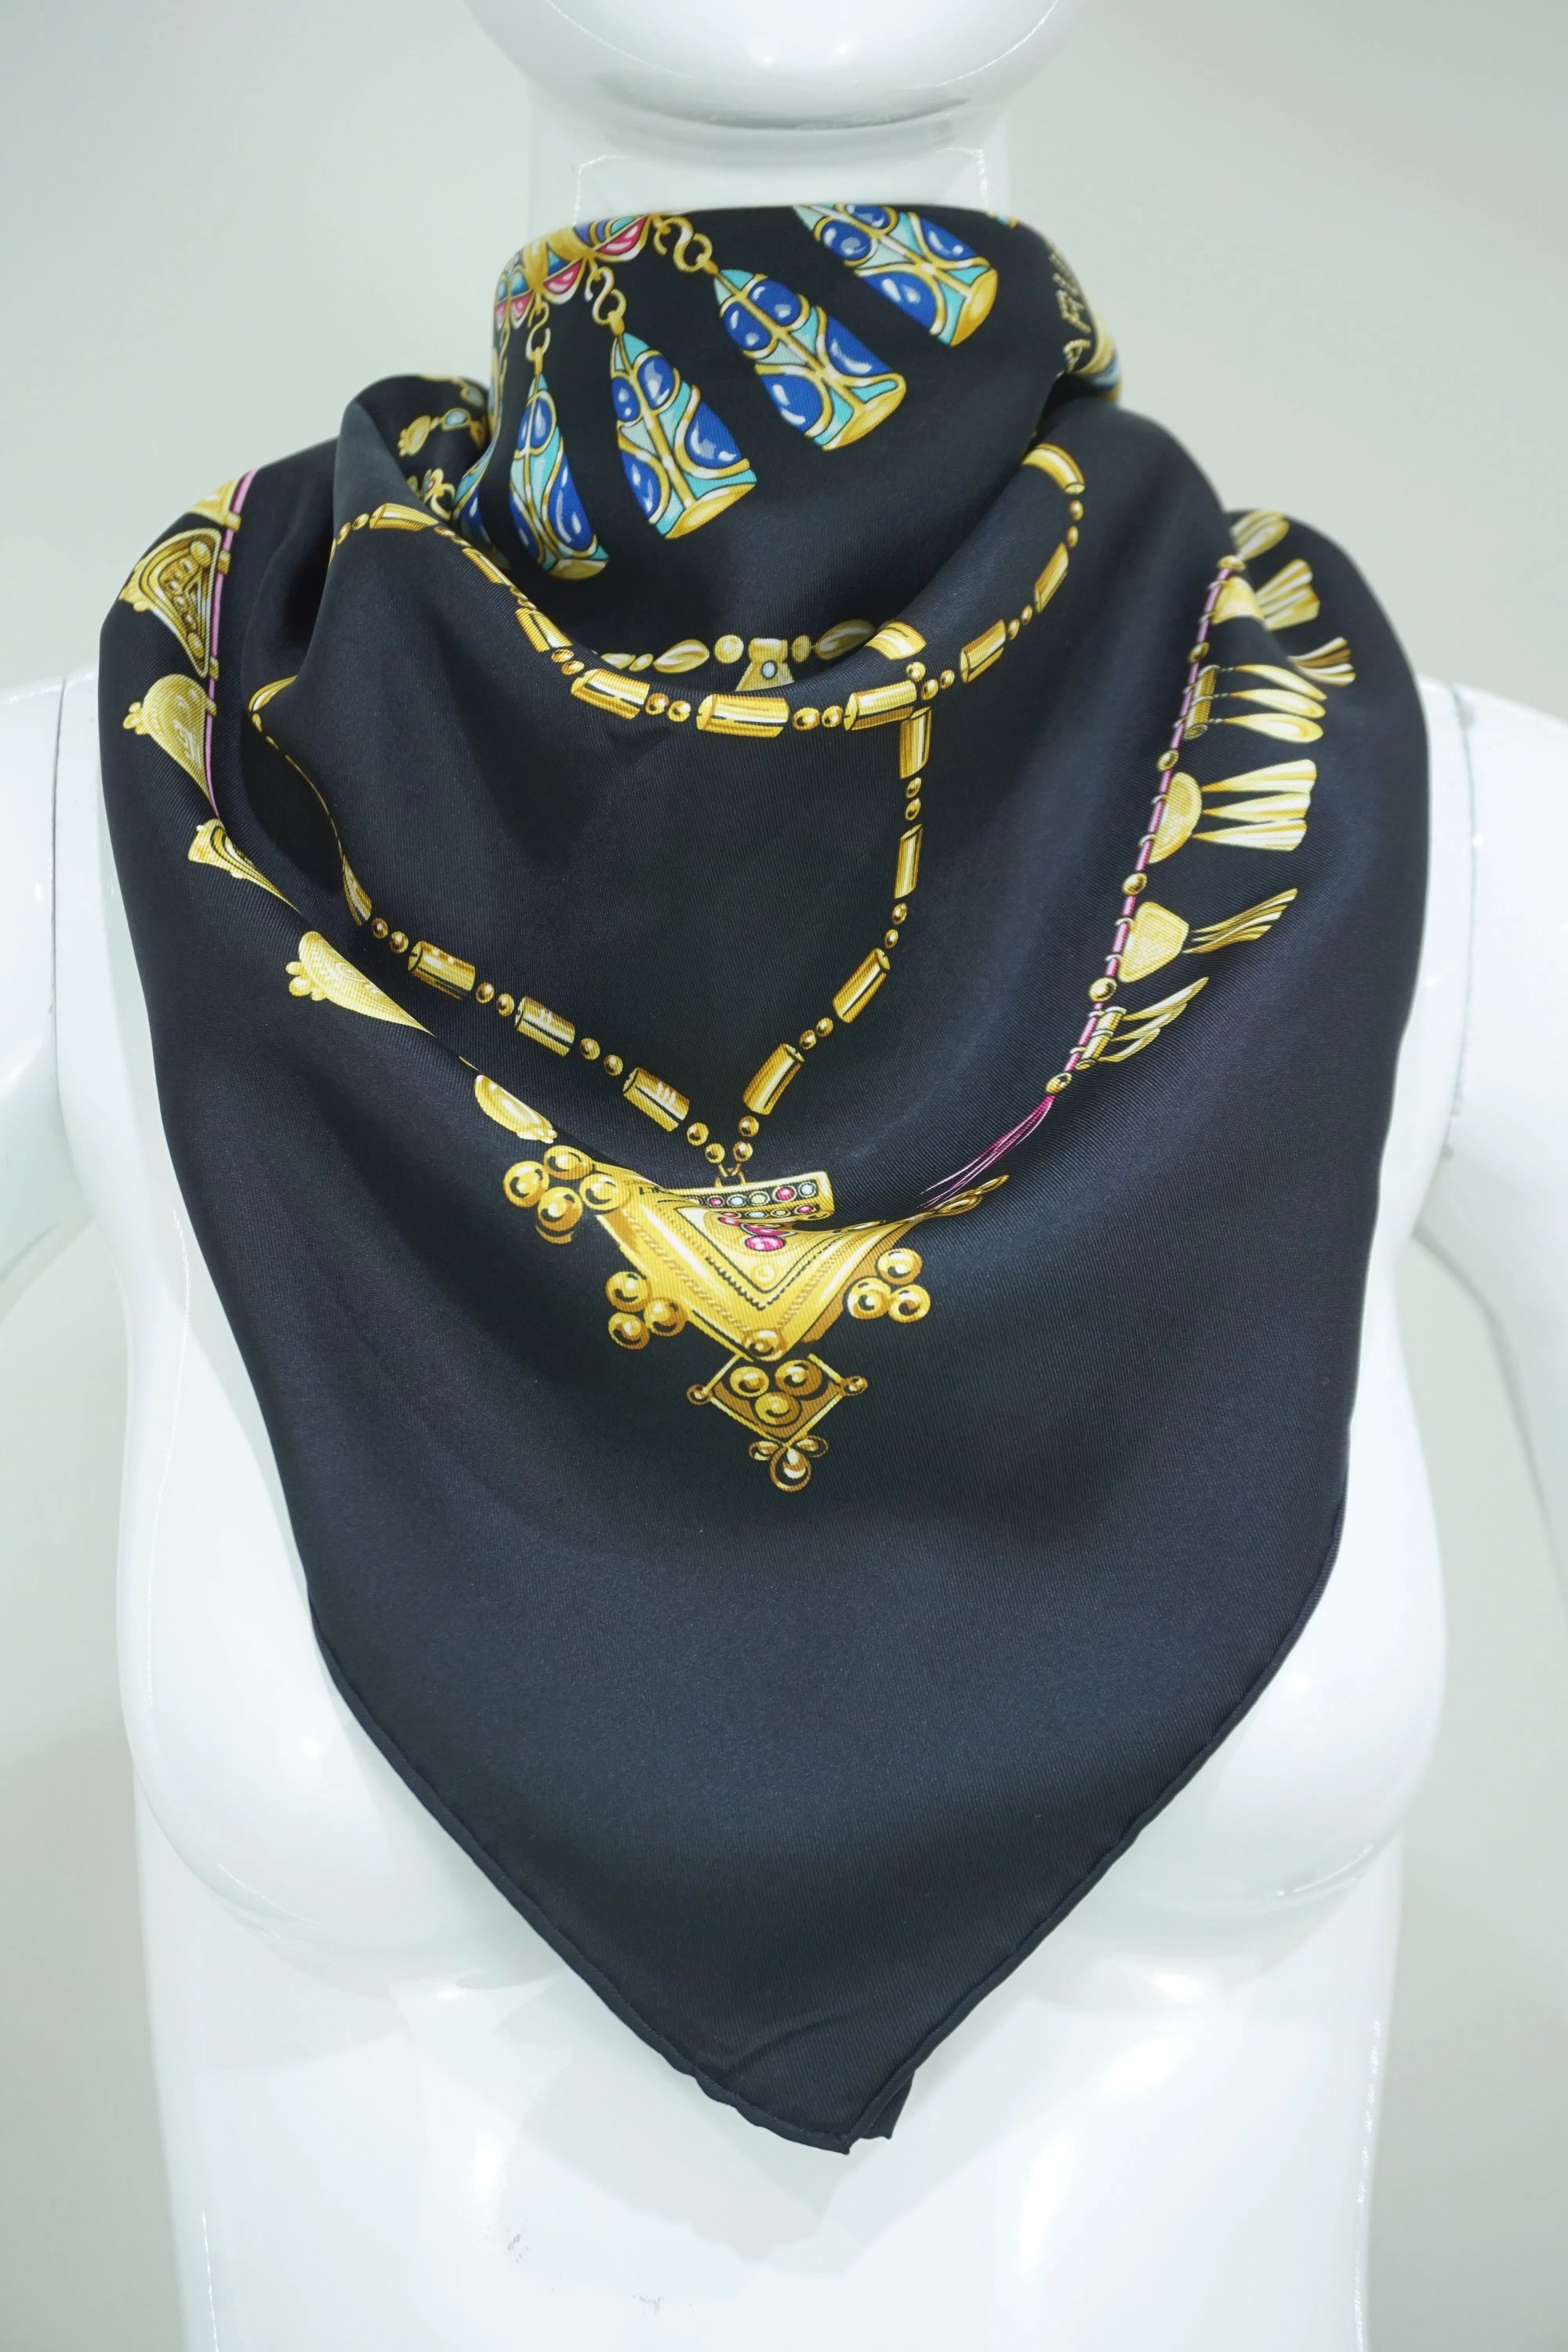 Hermès Parures Des Sables Black and Gold Silk Scarf 90cm